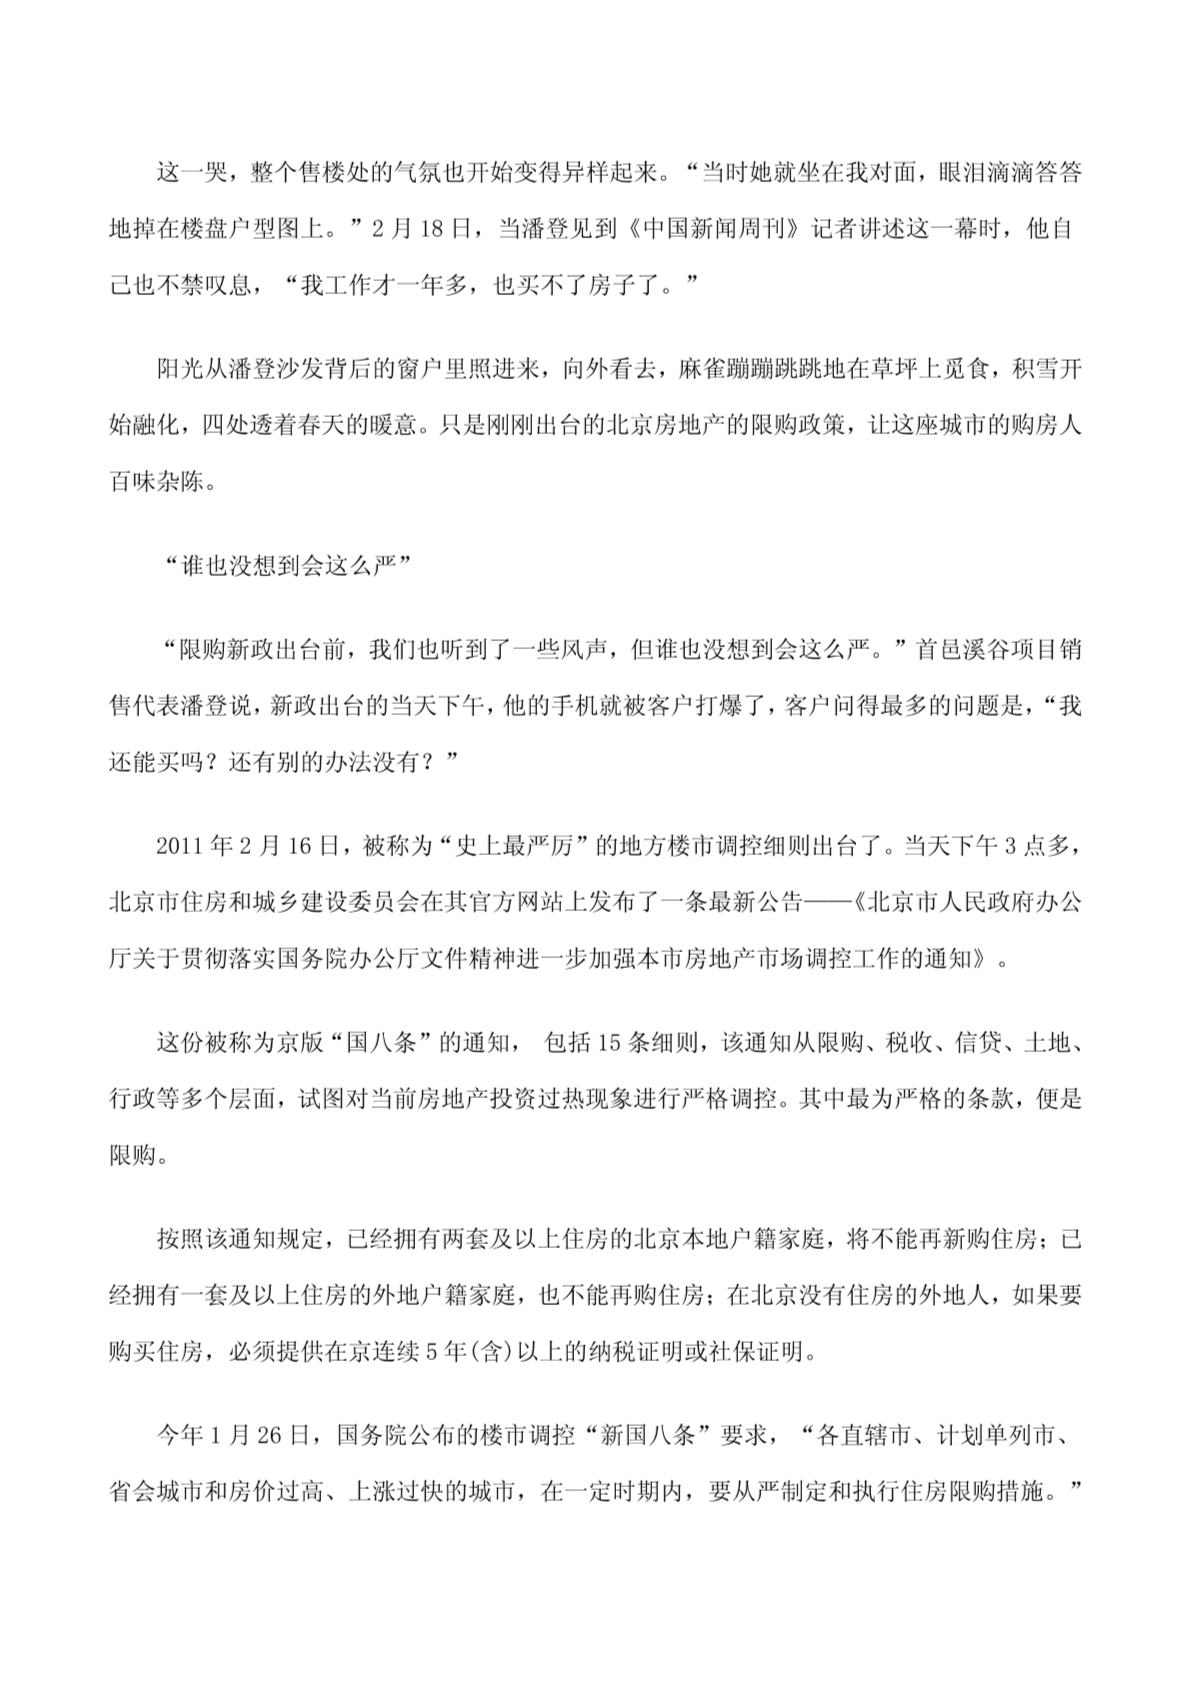 2011北京房地产政策解读 最严地产限购令为何出北京-图二